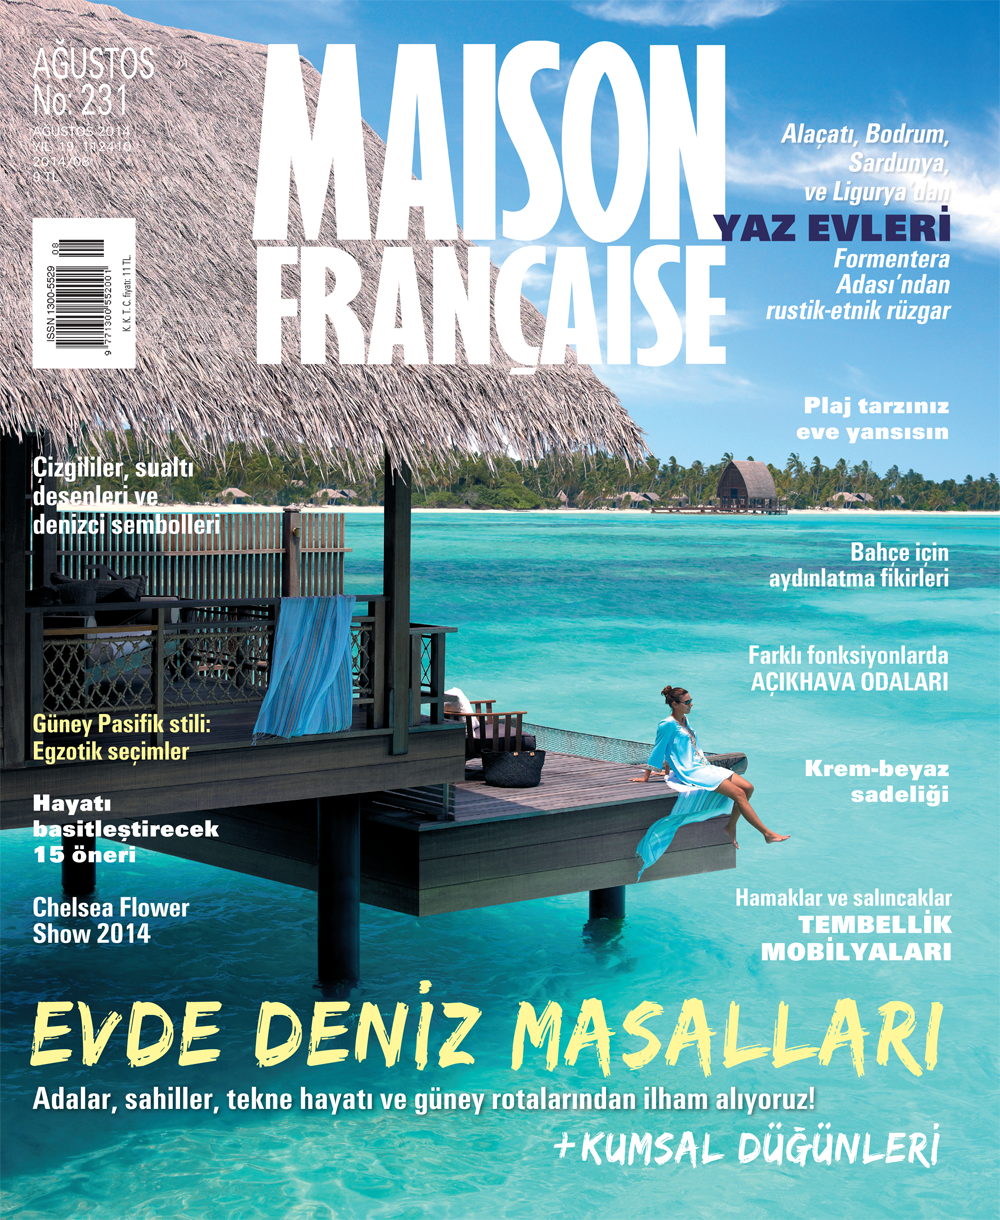 Maison Française Ağustos sayısı ÇIKTI!